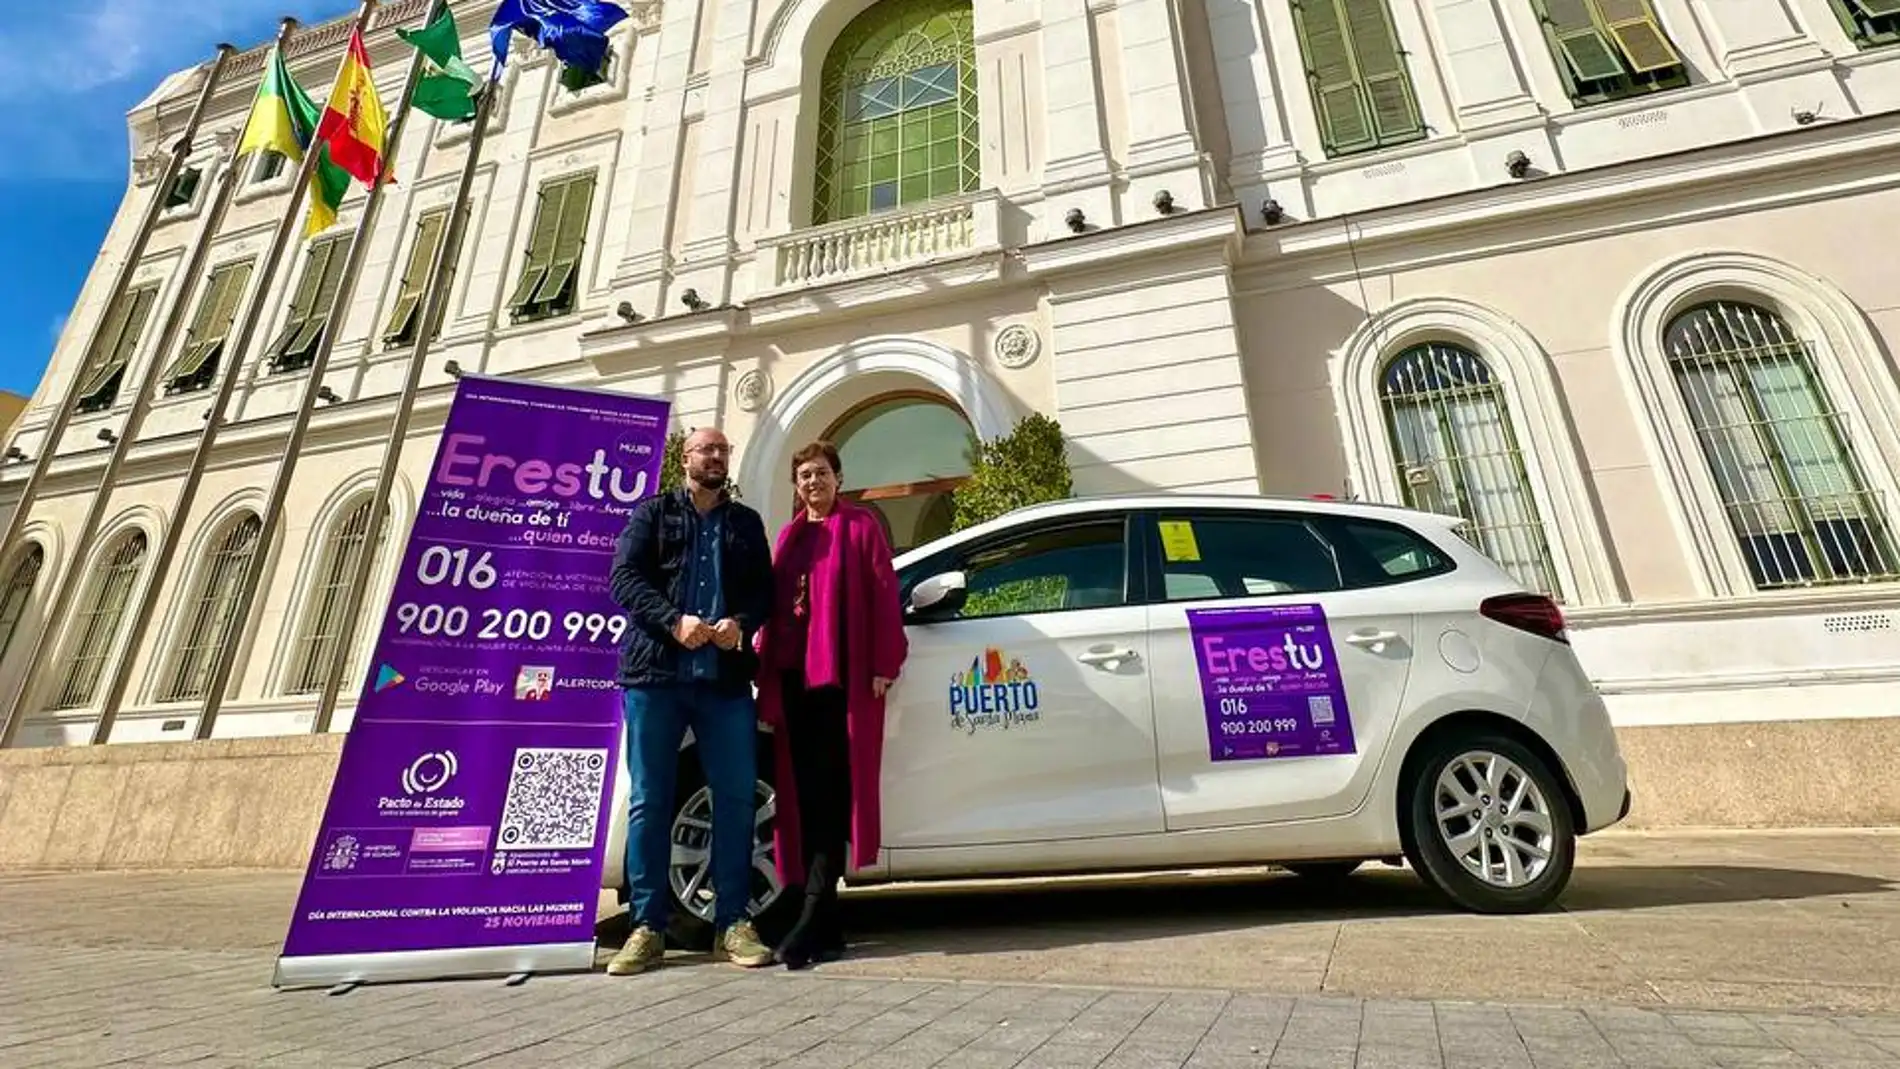 Uno de los taxis rotulados con la campaña promovida desde el Ayuntamiento de El Puerto